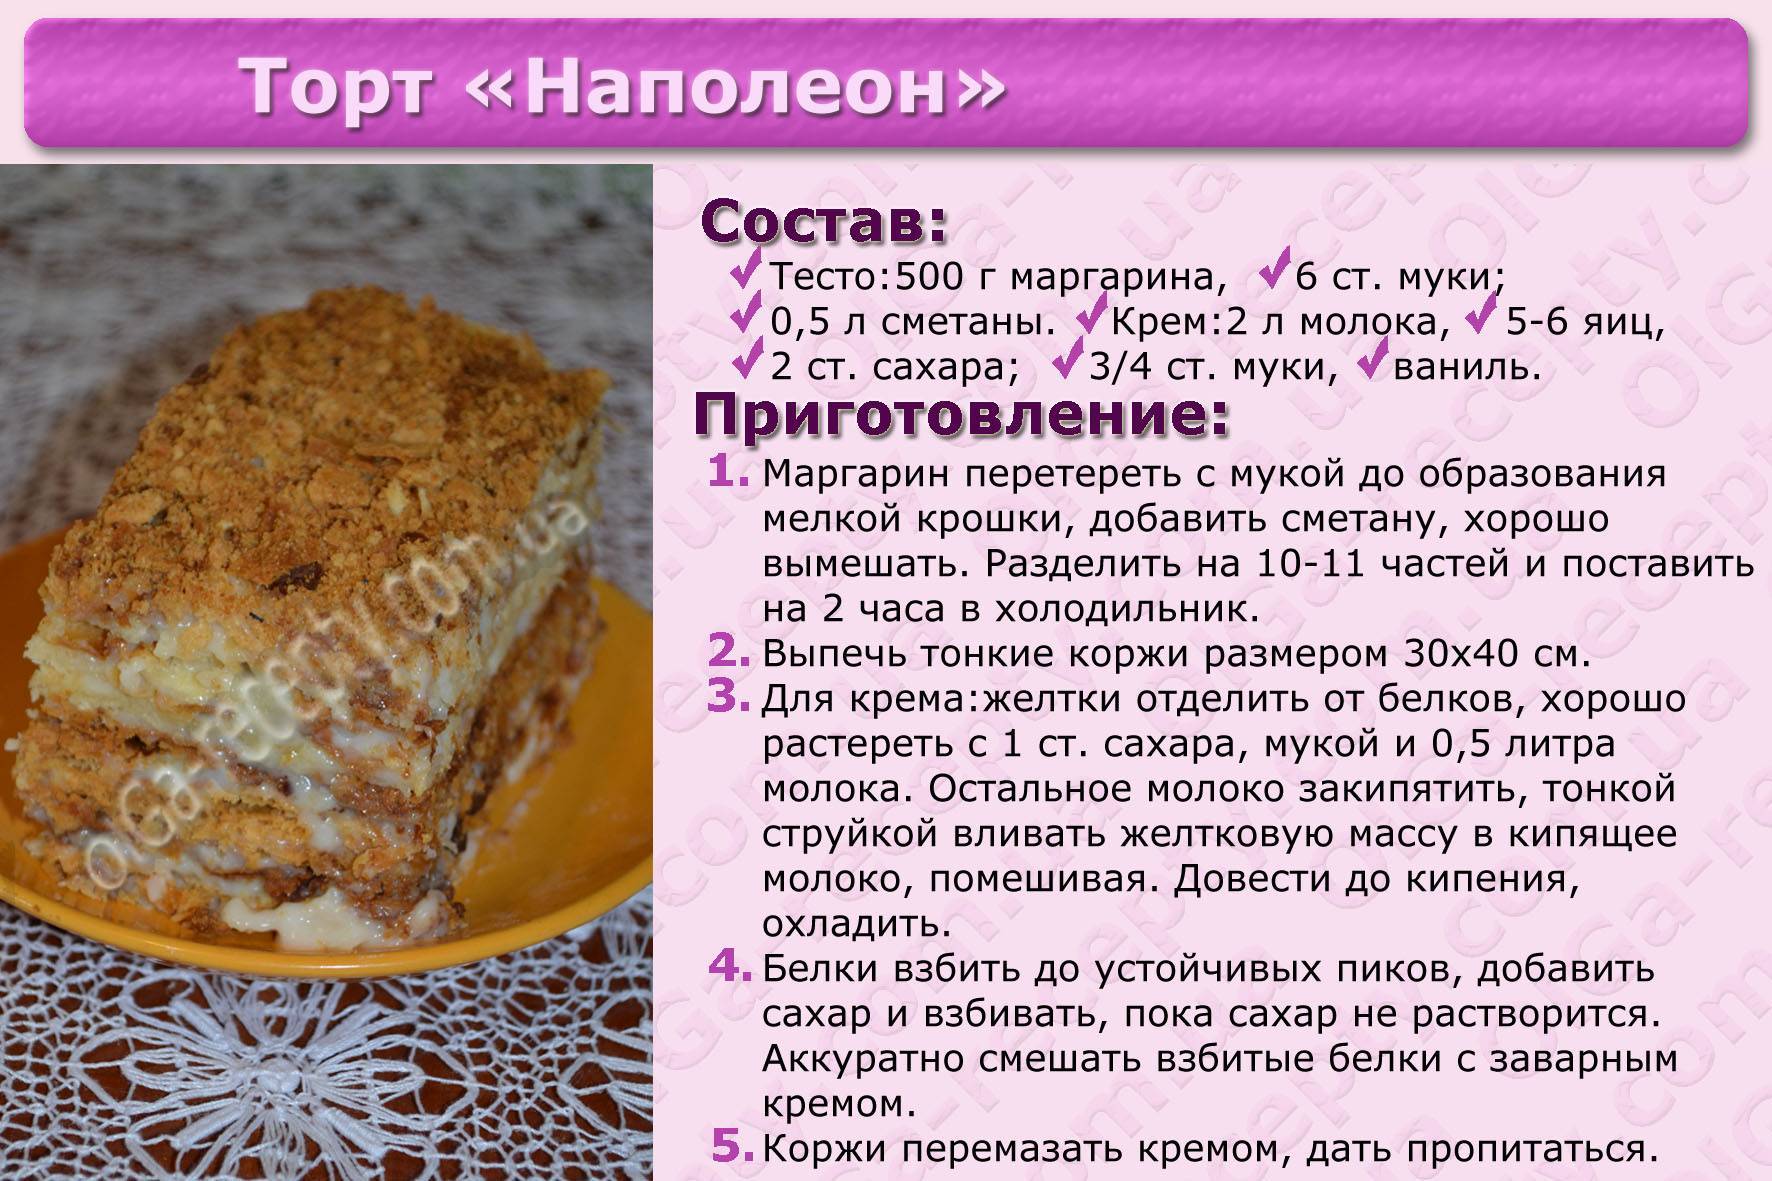 Рецепты простых тортов приготовленных на день рождения в домашних условиях, с фото, пошагово